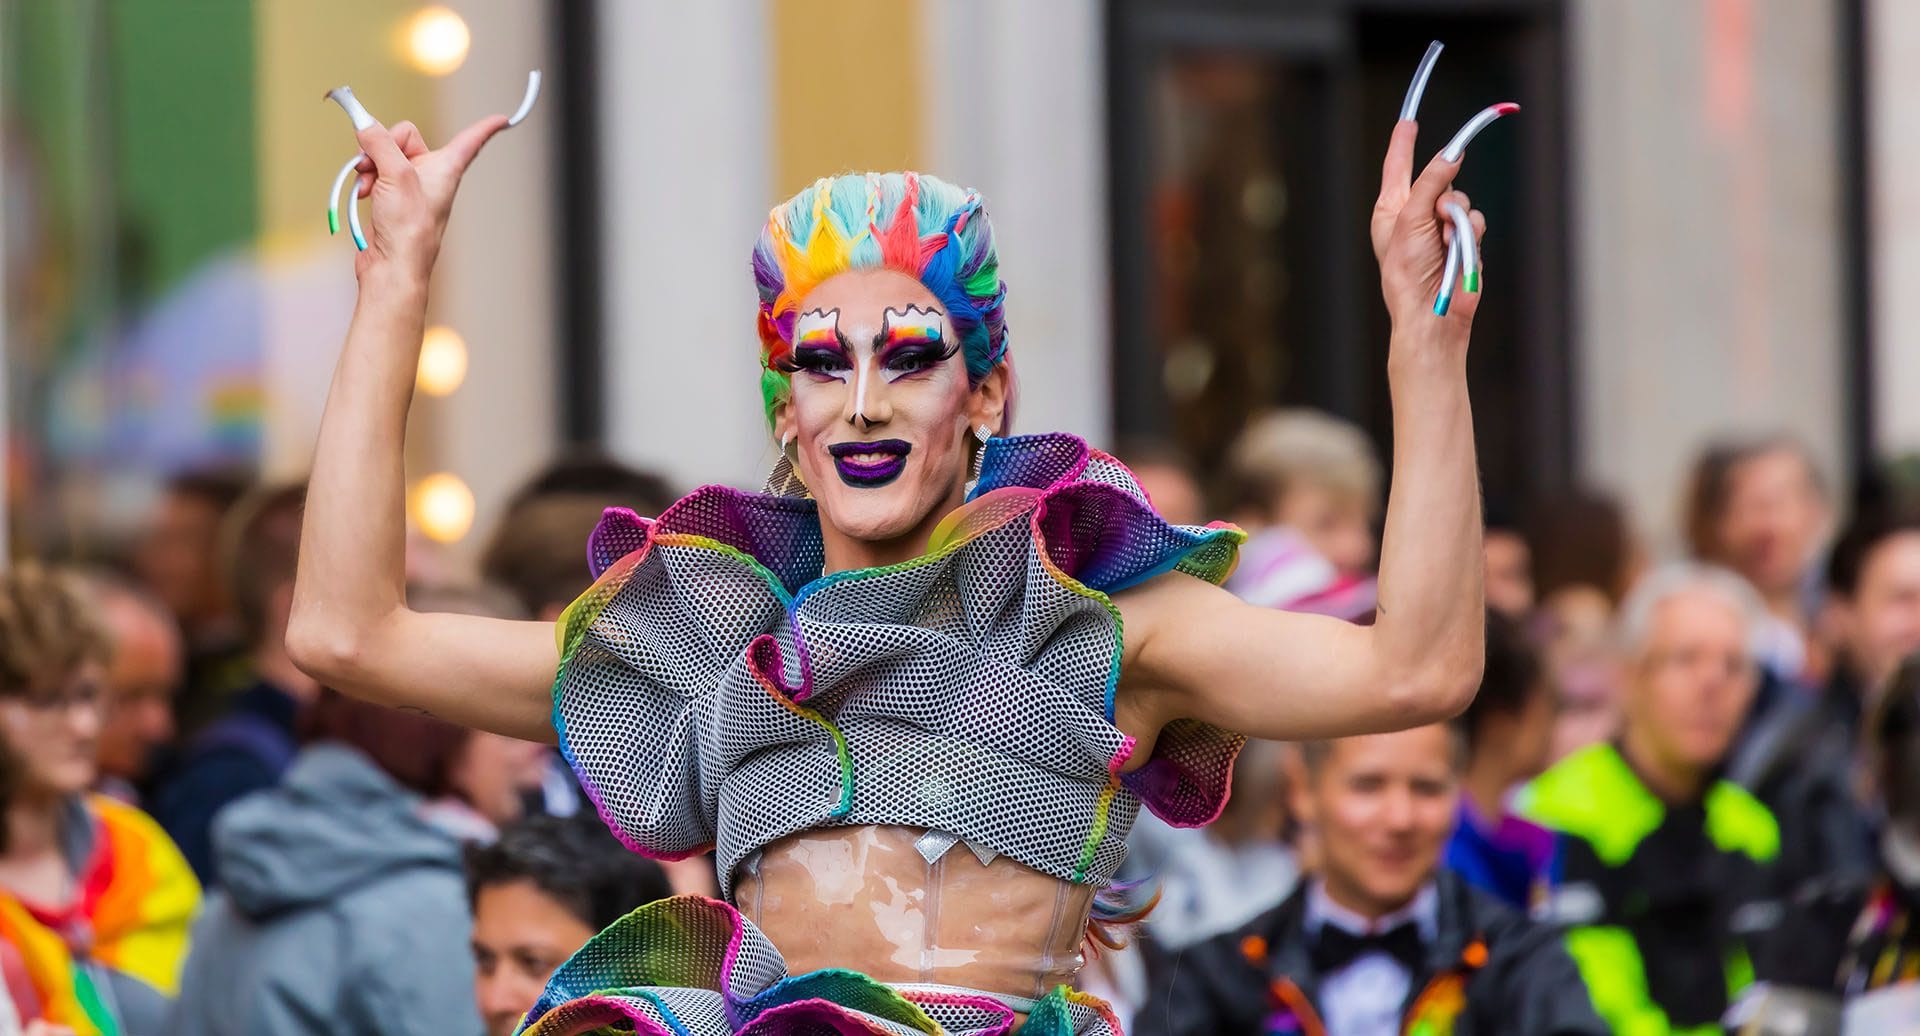 Marche de la fierté gay de Munich